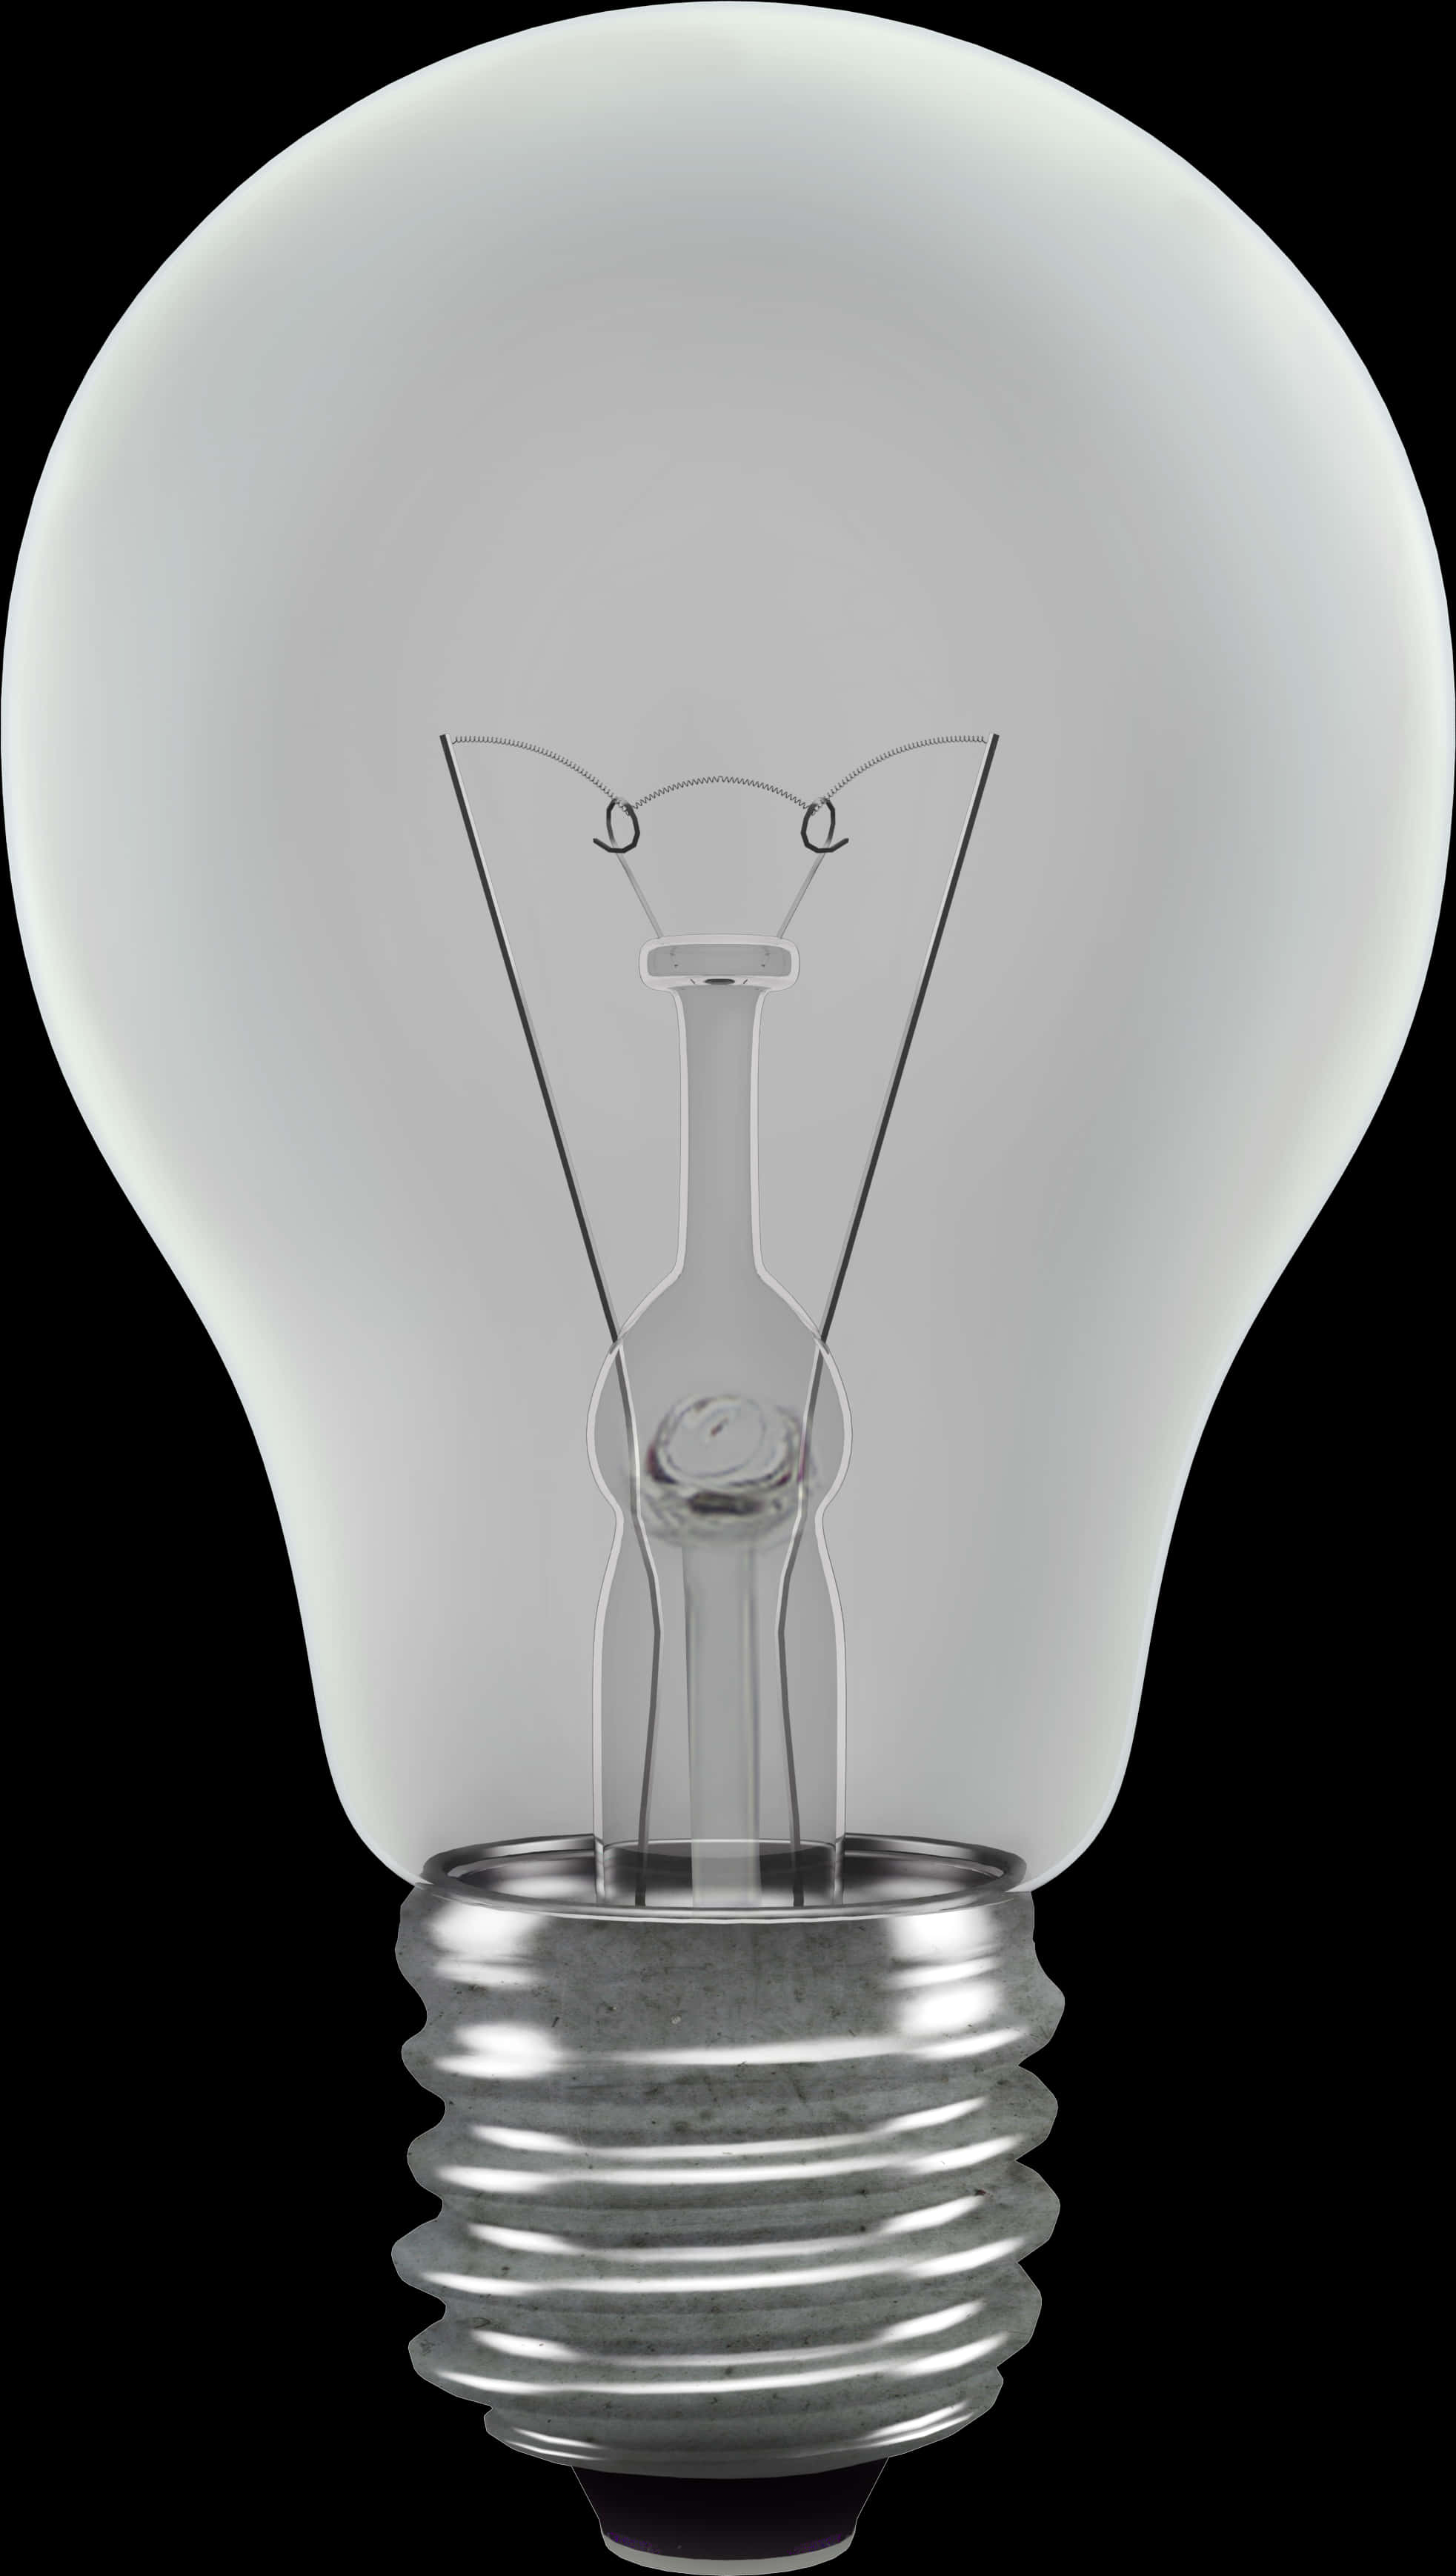 A Light Bulb With A Lightbulb